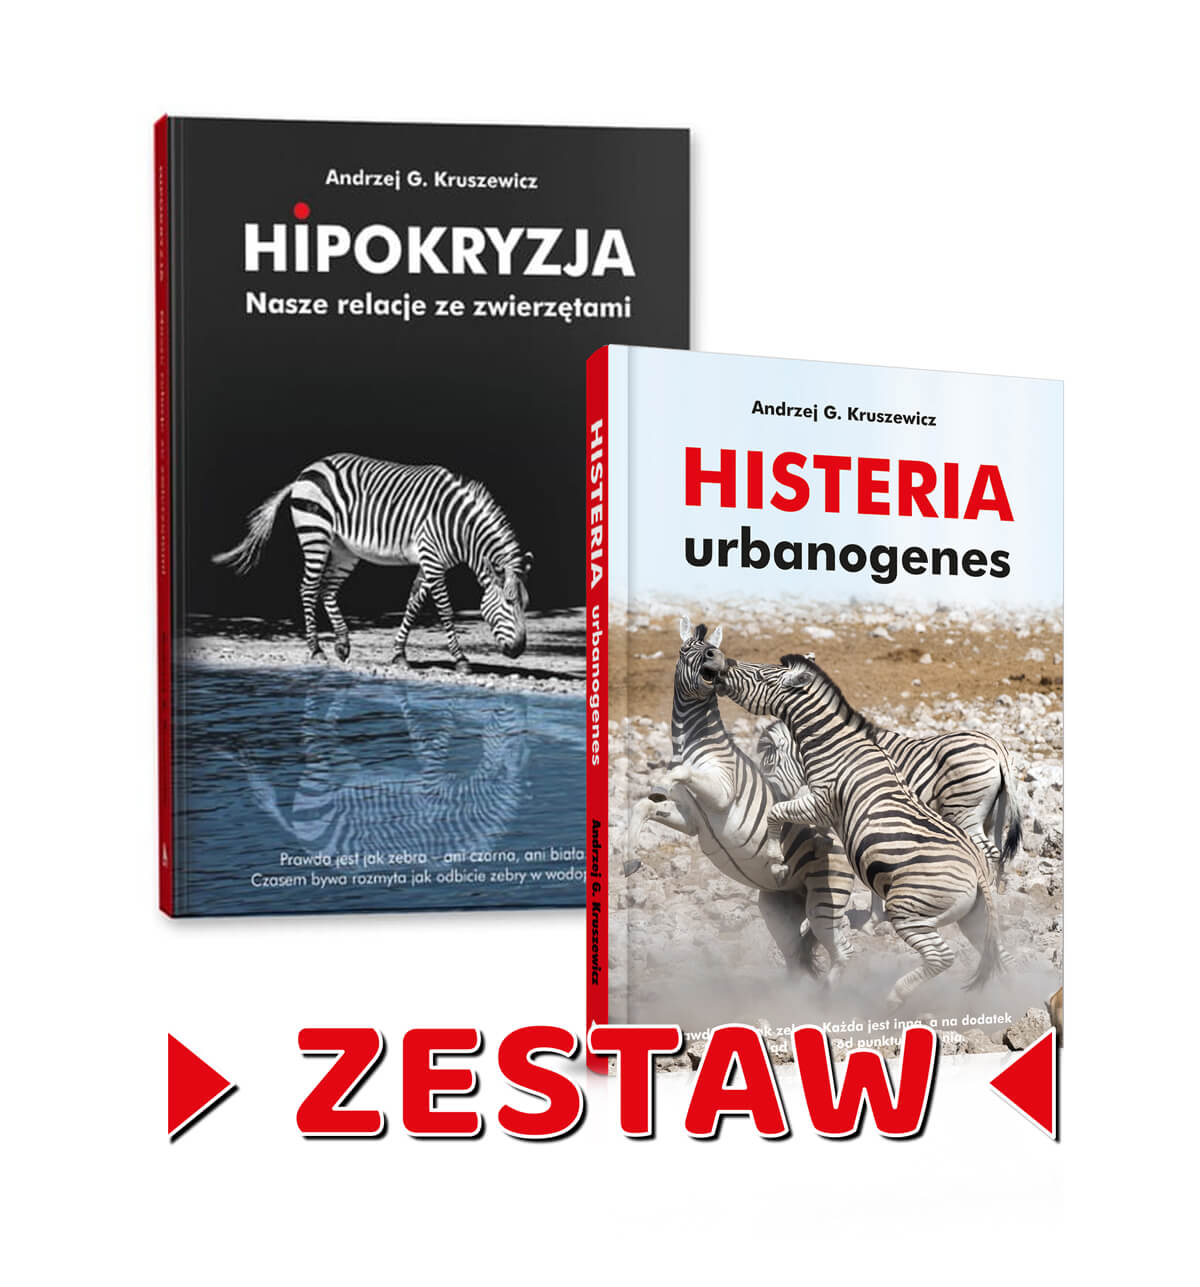 Zestaw (Histeria + Hipokryzja) – Andrzej G. Kruszewicz